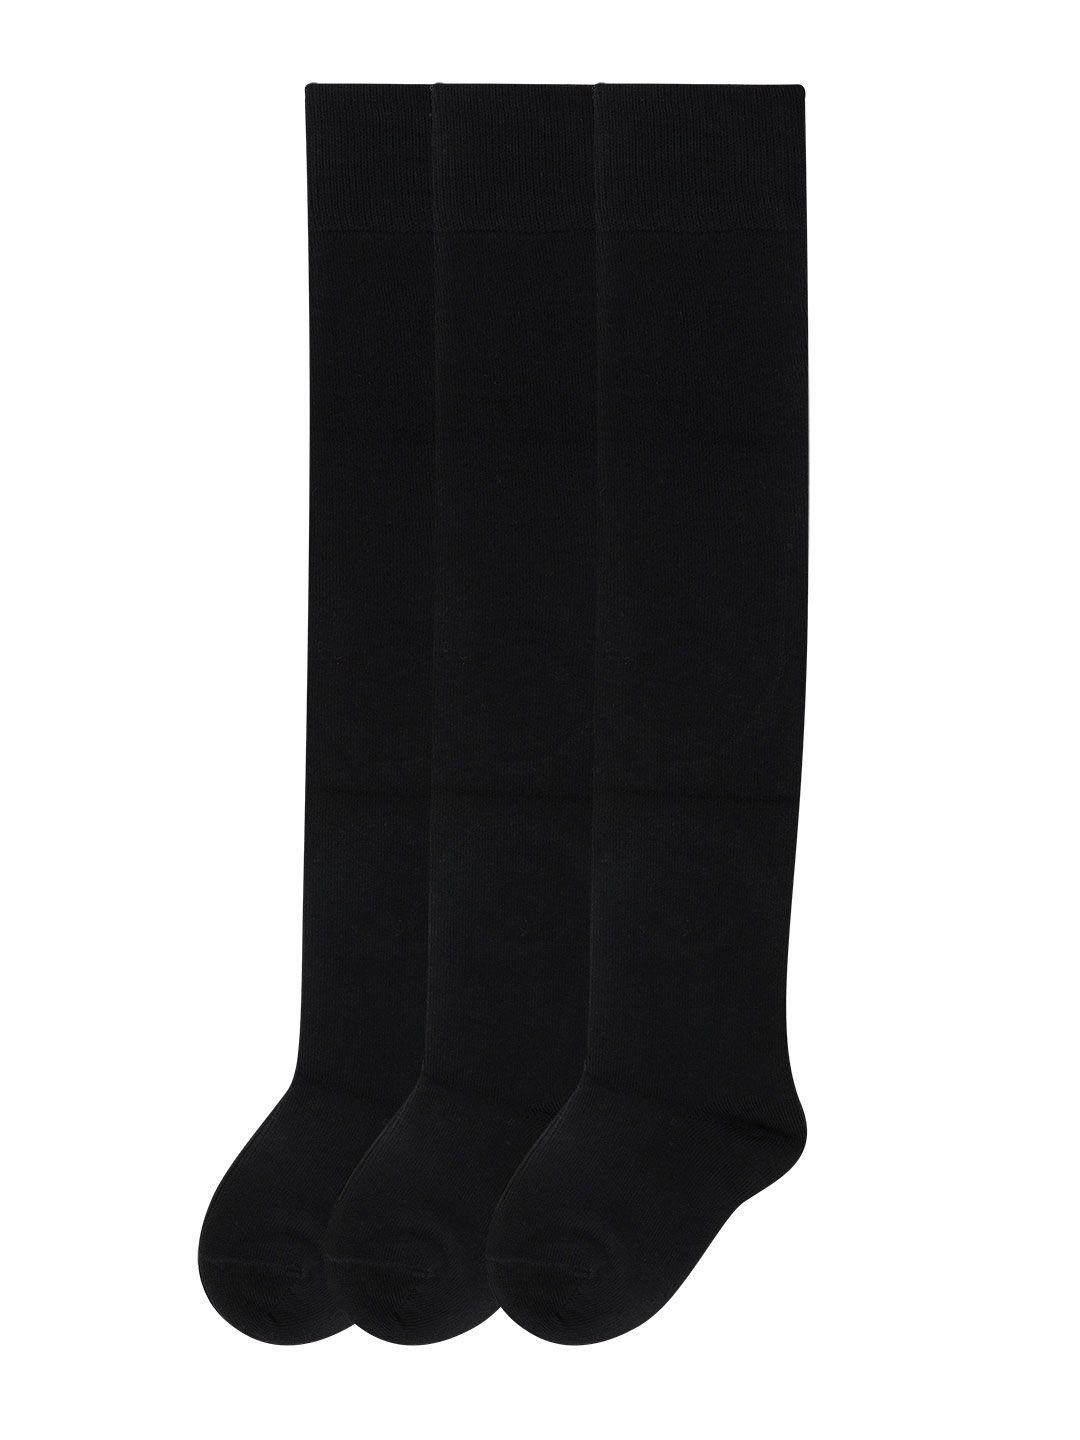 bonjour girls pack of 3 black knee high stockings